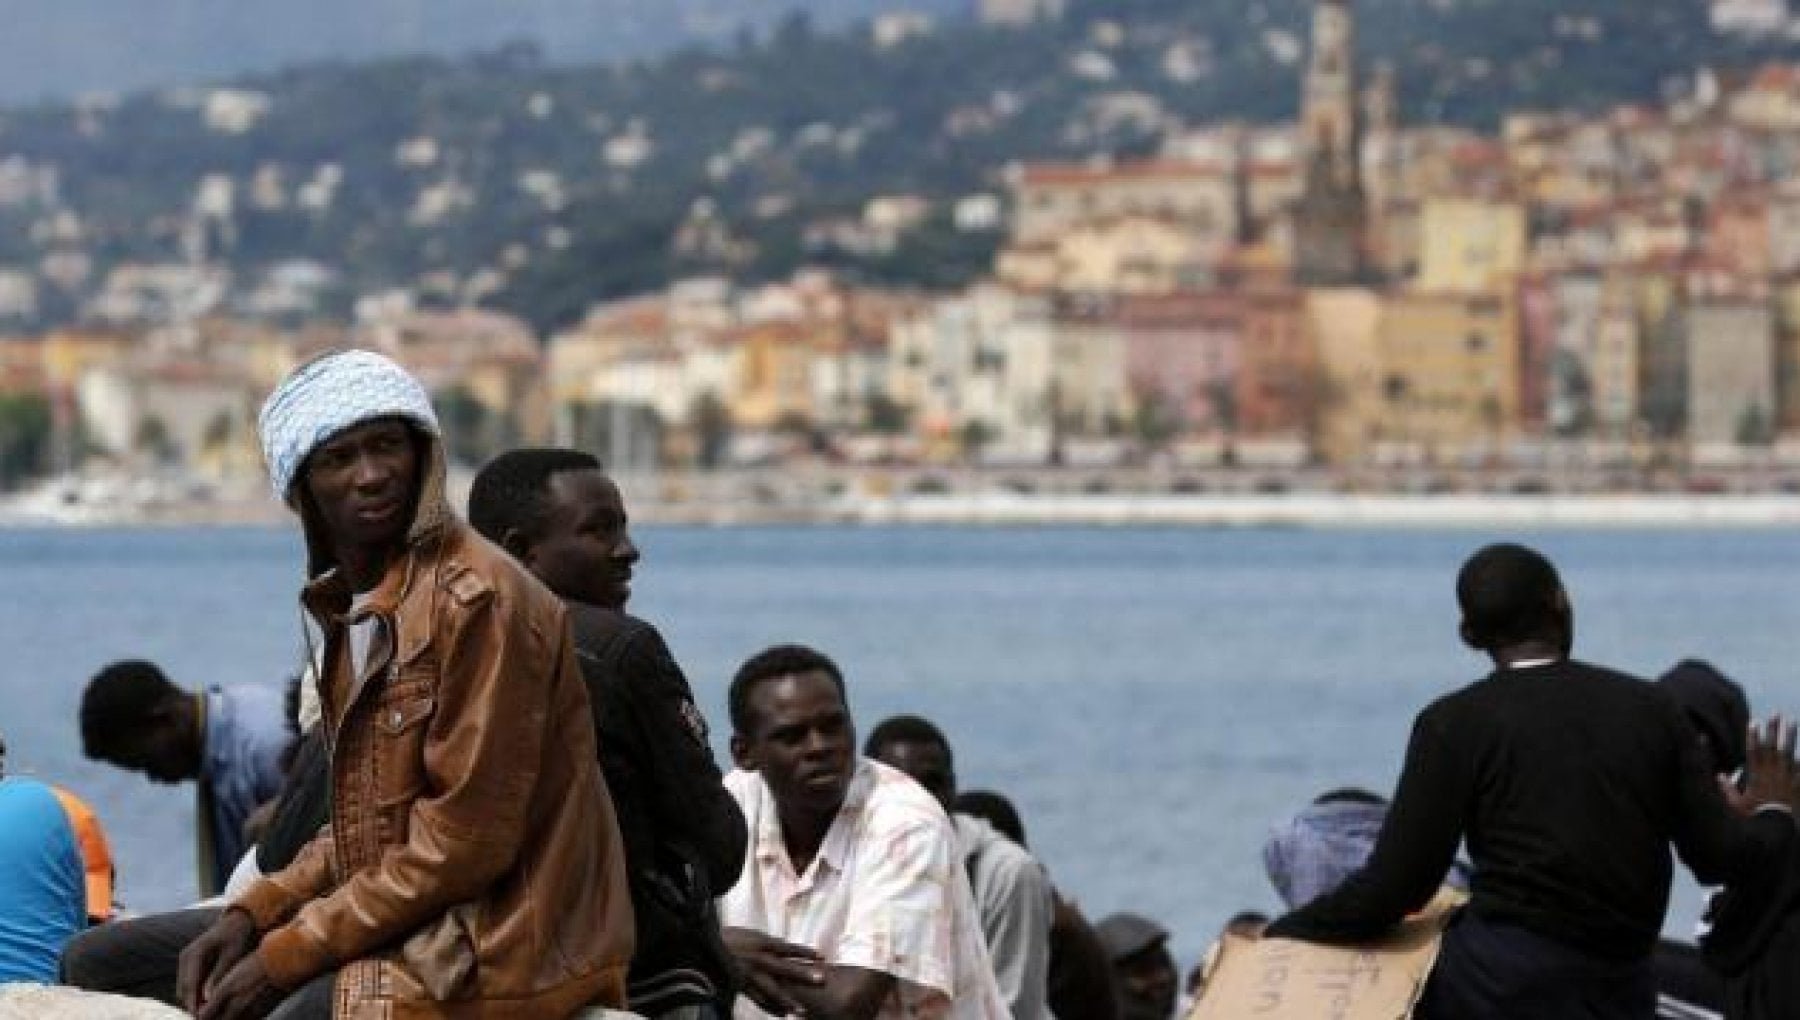 Migranti: Francia, Germania e Spagna accolgono più dell’Italia. Le bugie del governo – la Repubblica